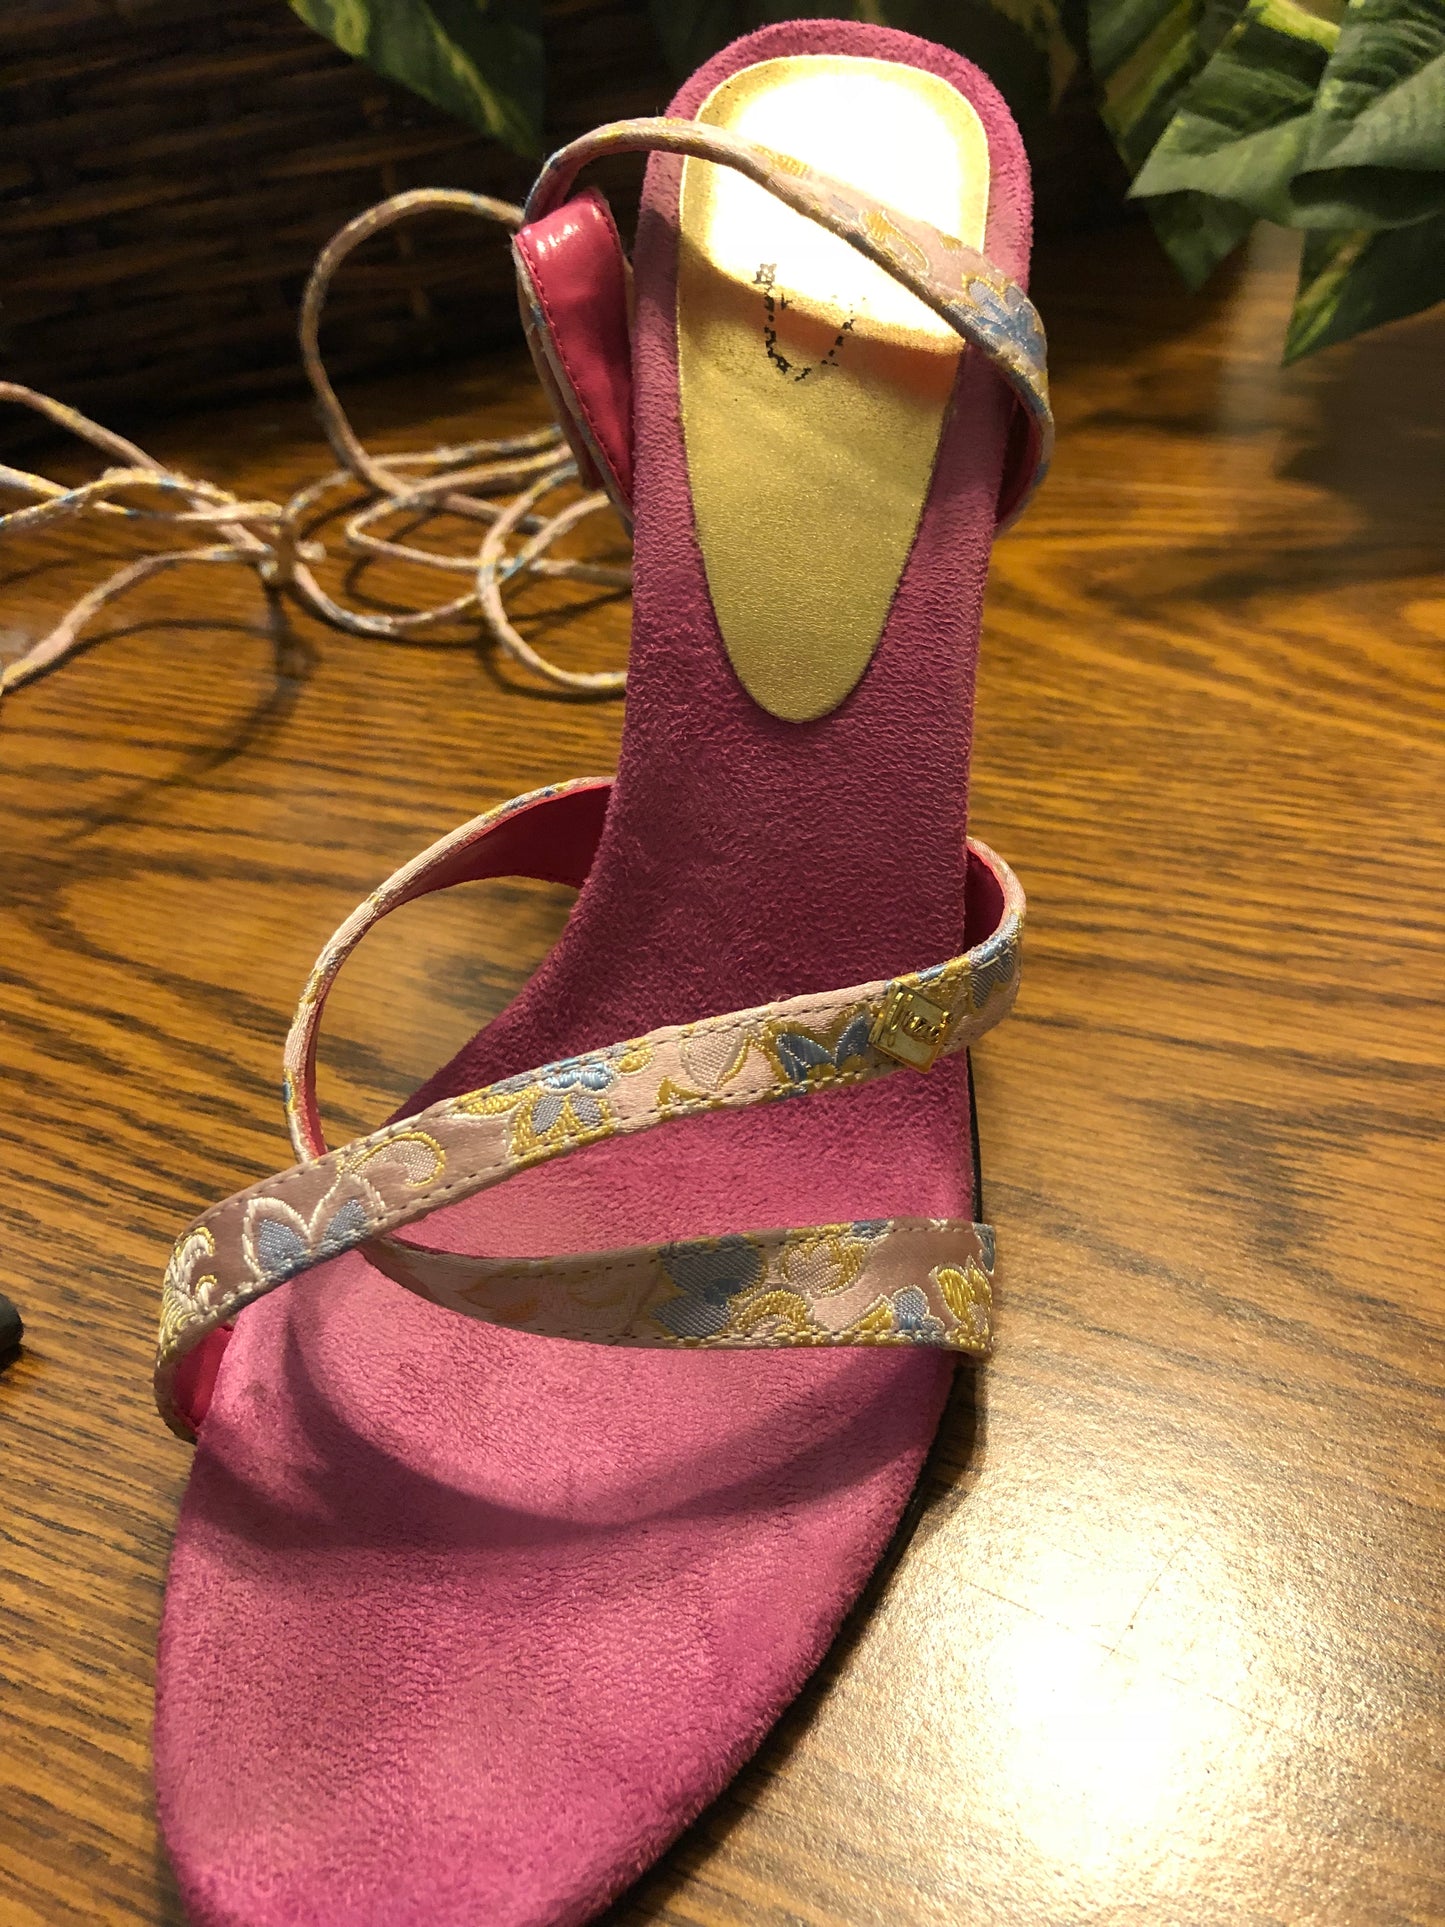 Unze Tie Up Heel Sandals - US Size 7 - Used